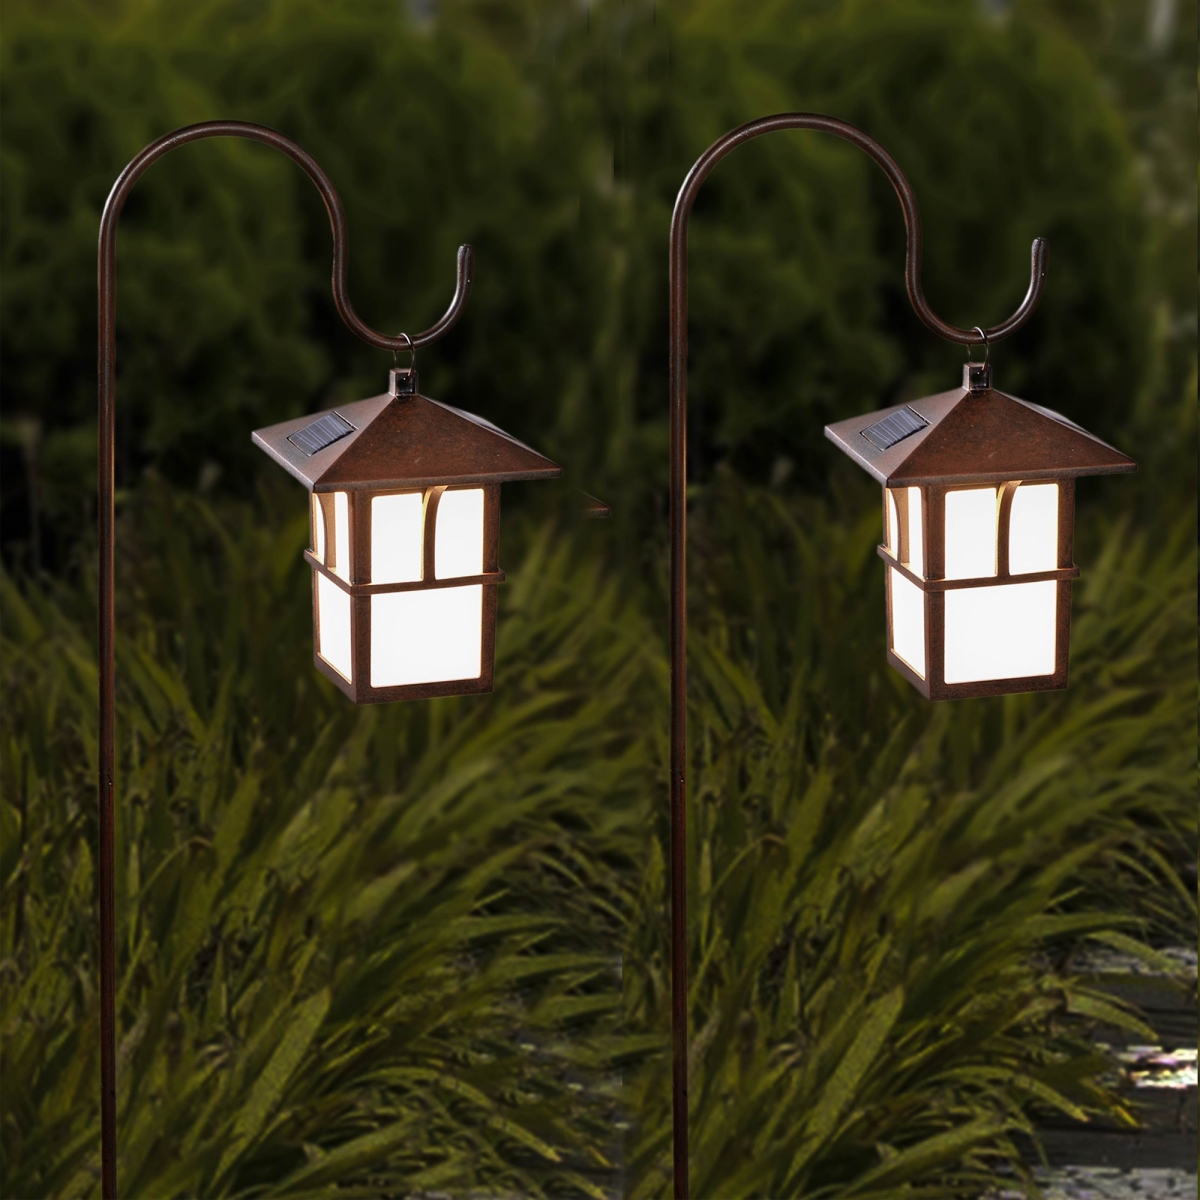 Wh075 Pagoda Hanging Solar Lanterns With Shepherd Hooks - Set Of 2